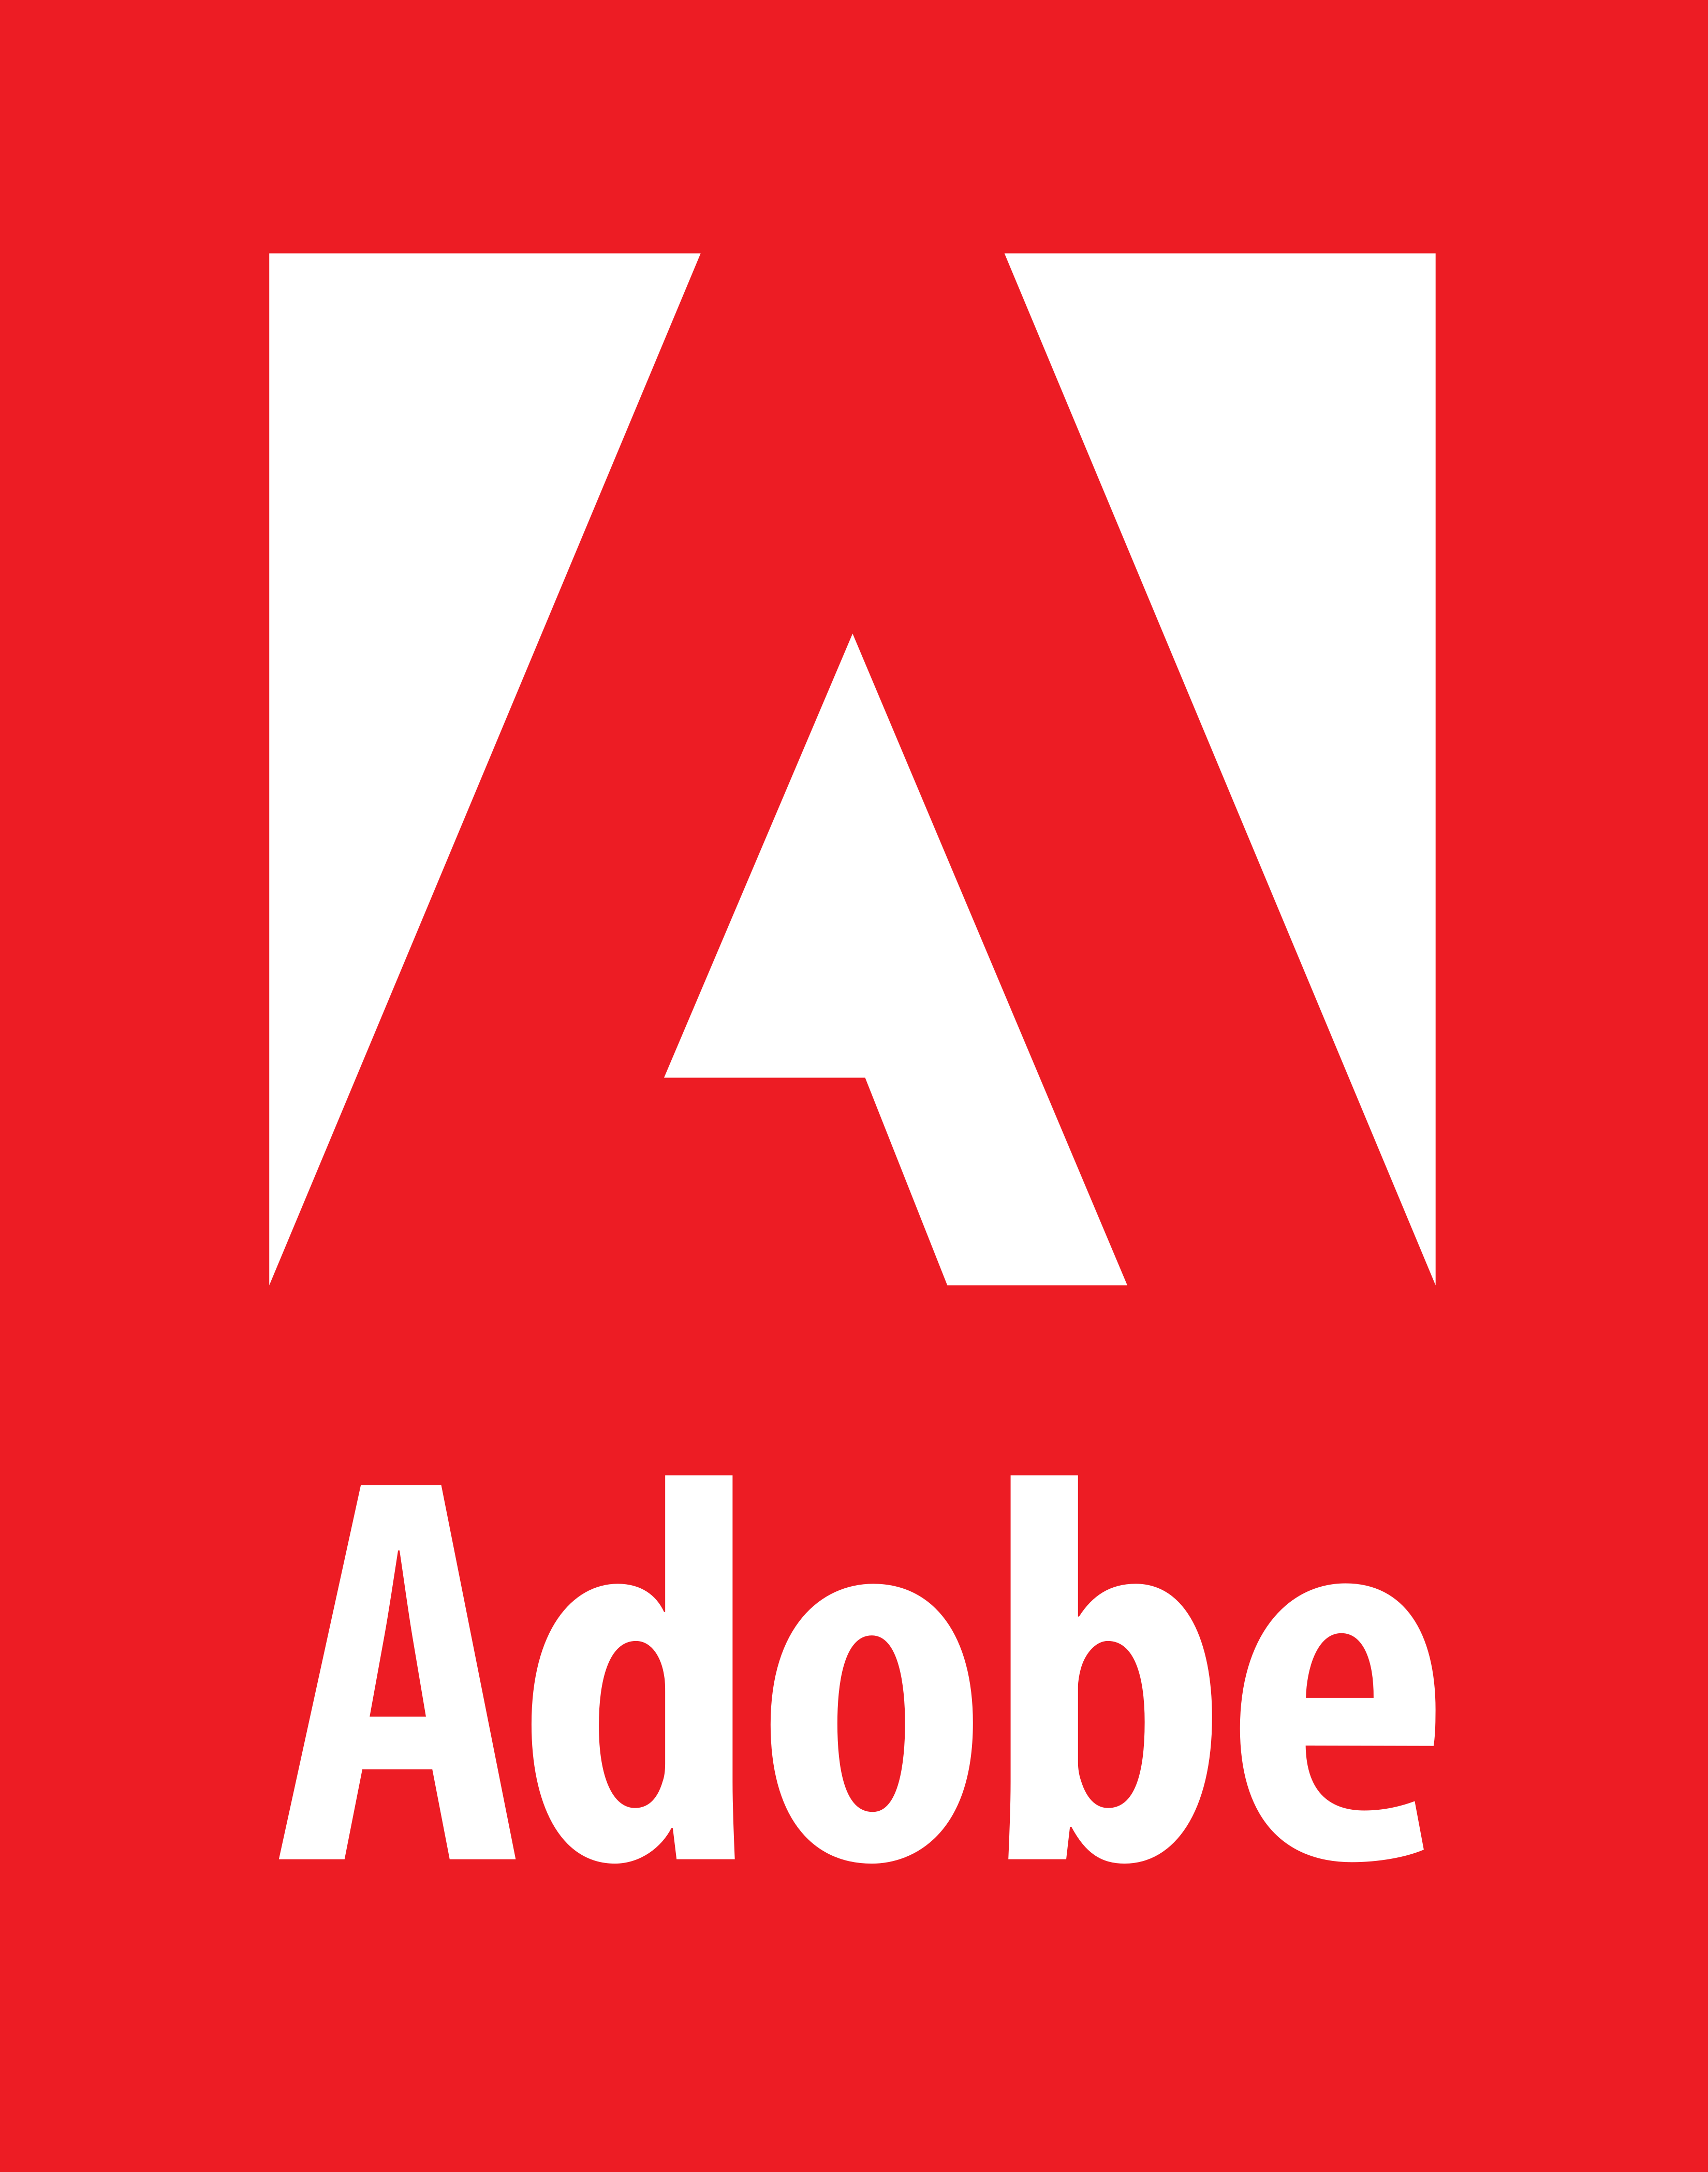 adobe logo download